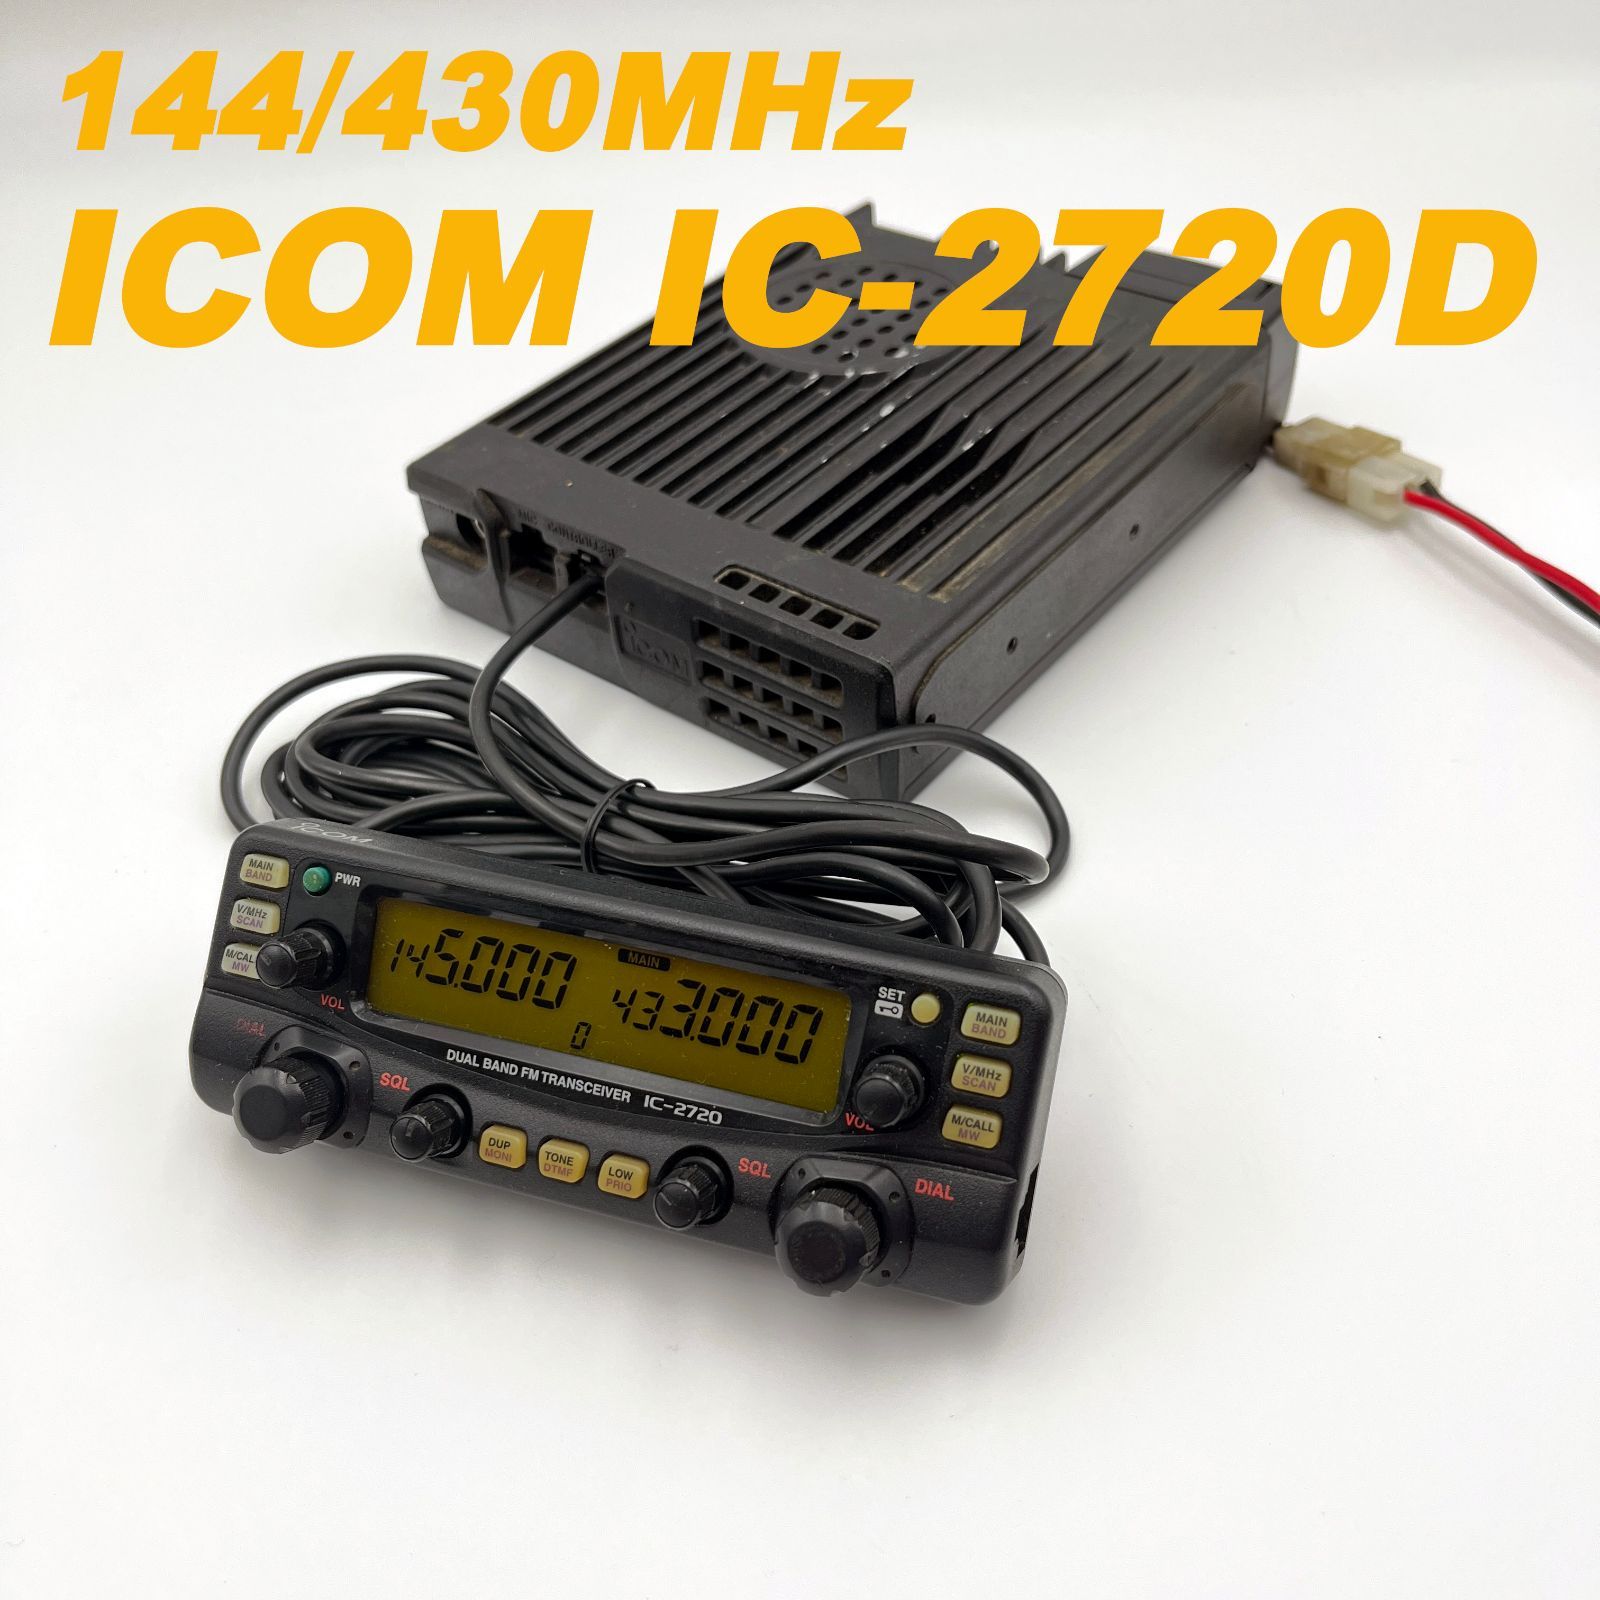 【中古品】IC-2720D 受信改造済 ICOM 144/430MHz ジャンク品 - メルカリShops